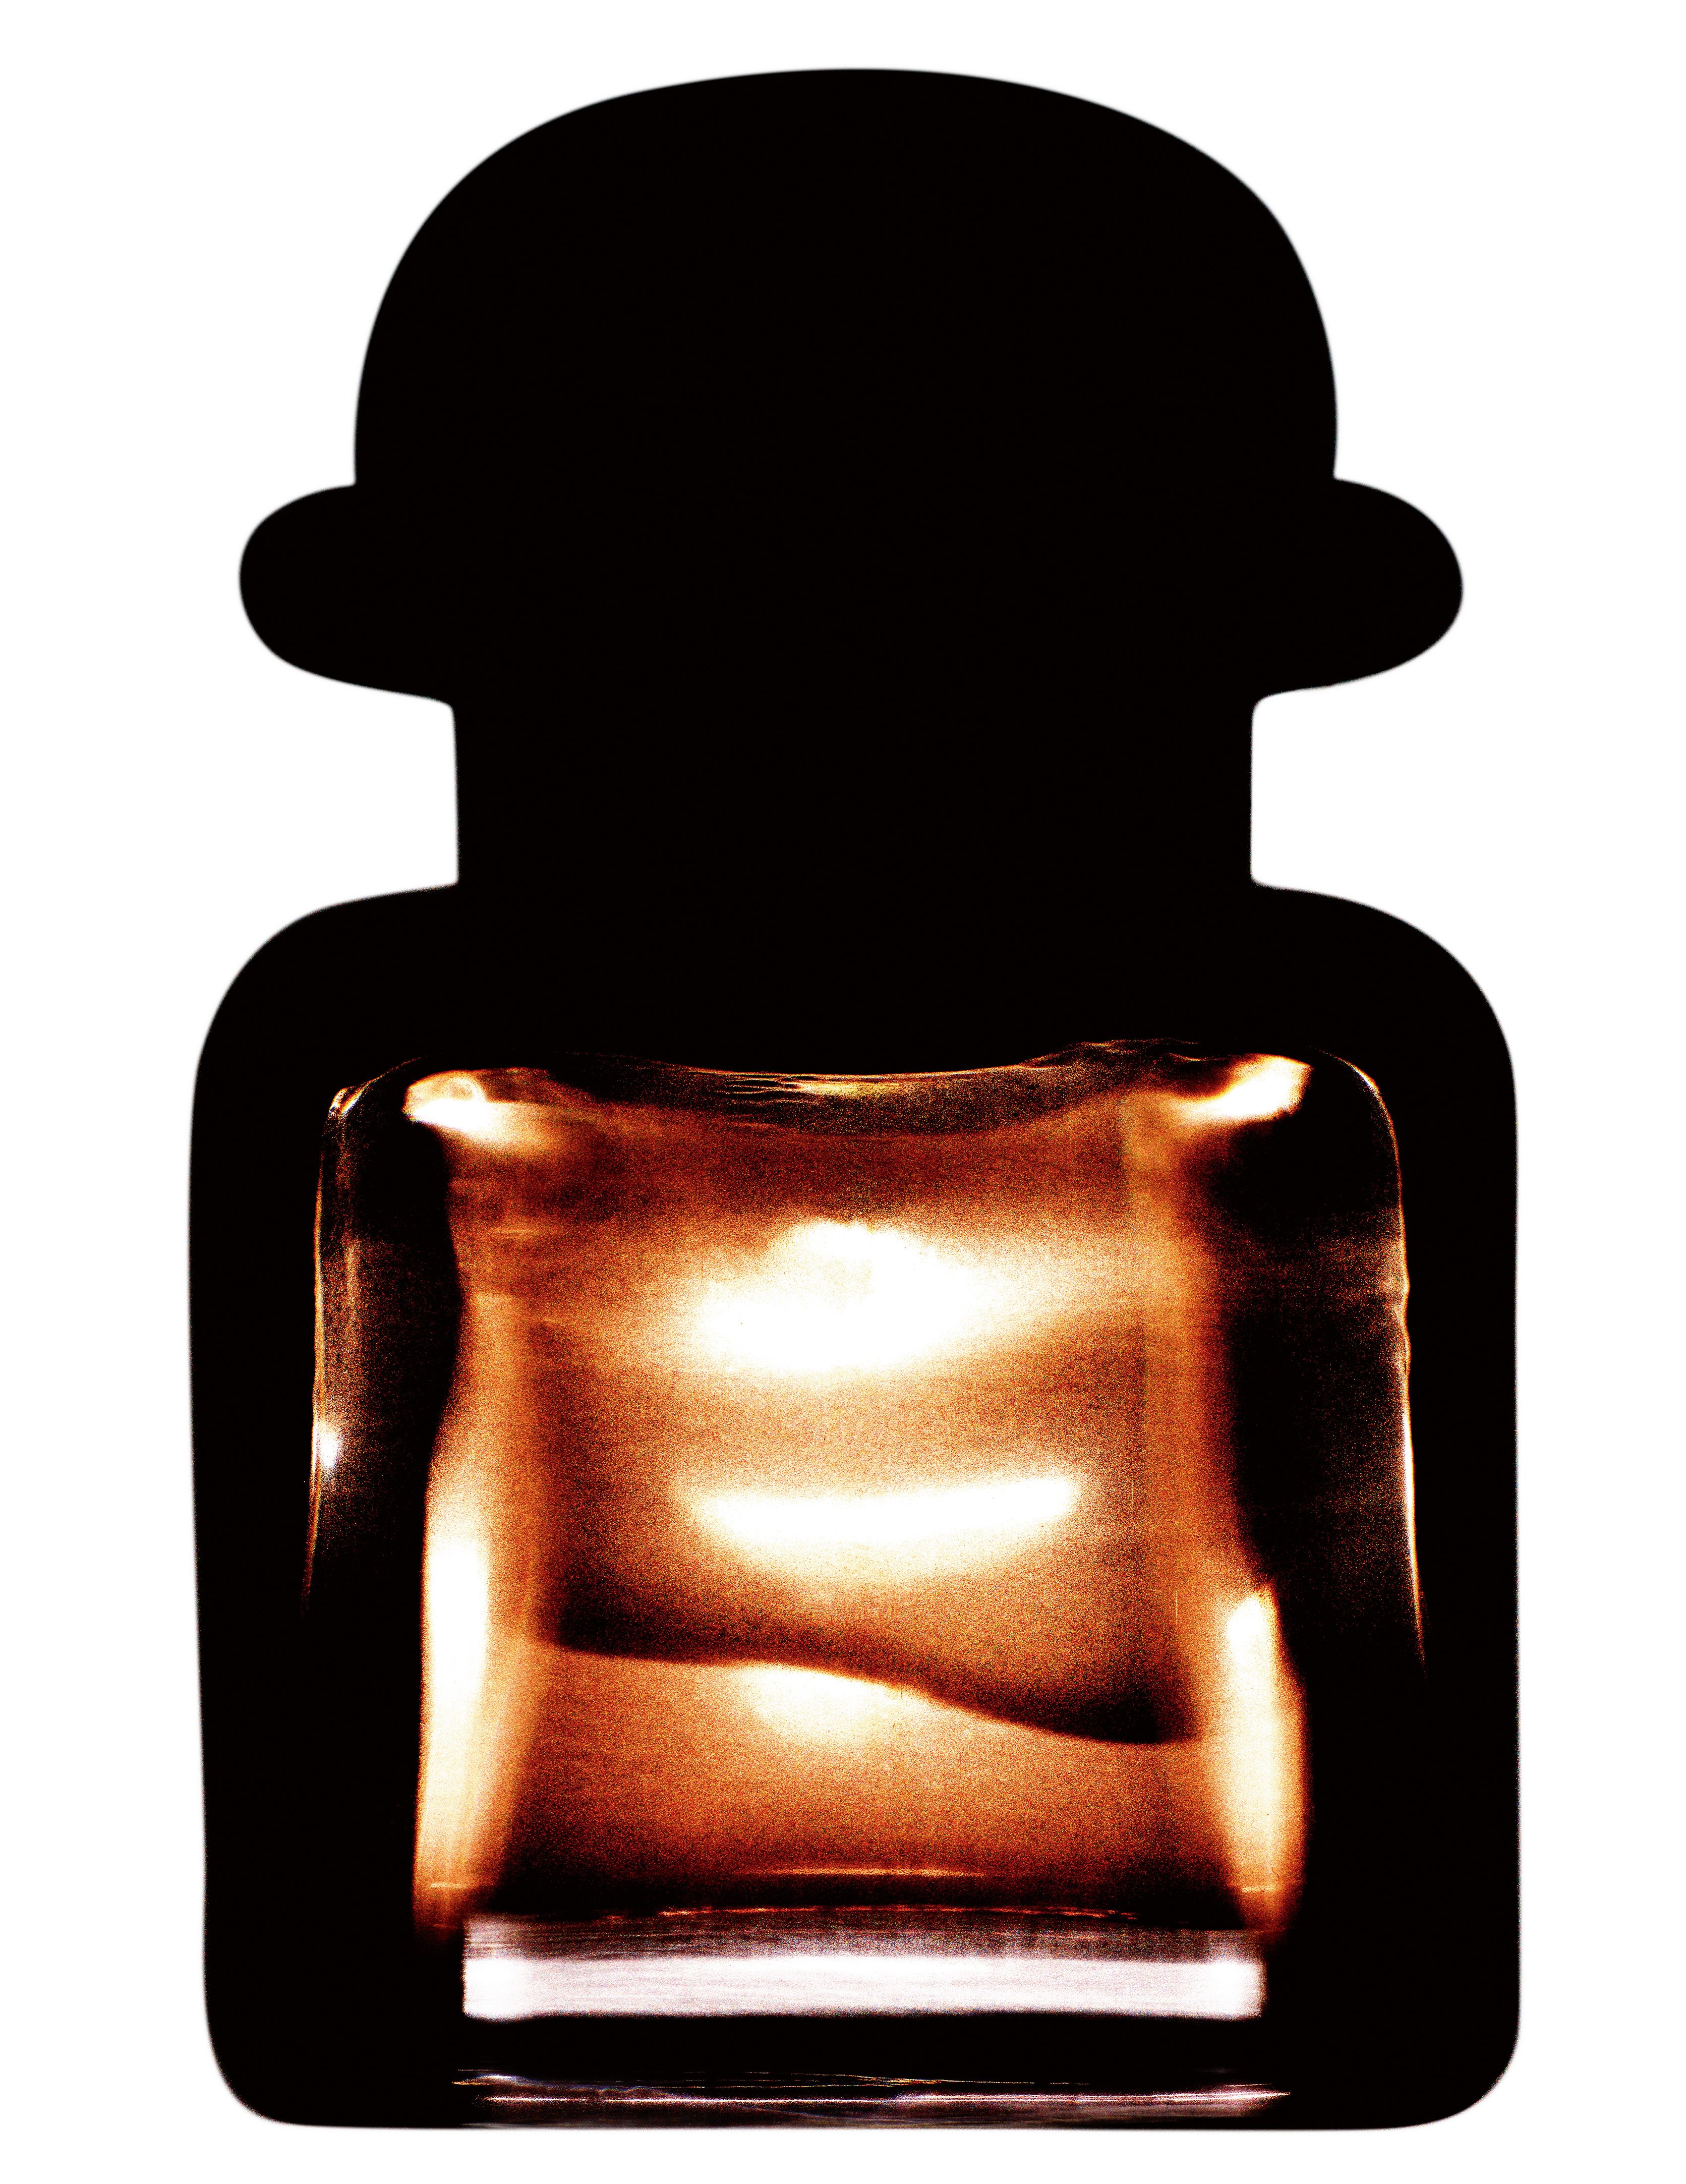 “Révélation", les nouveaux parfums photographiés par Guido Mocafico